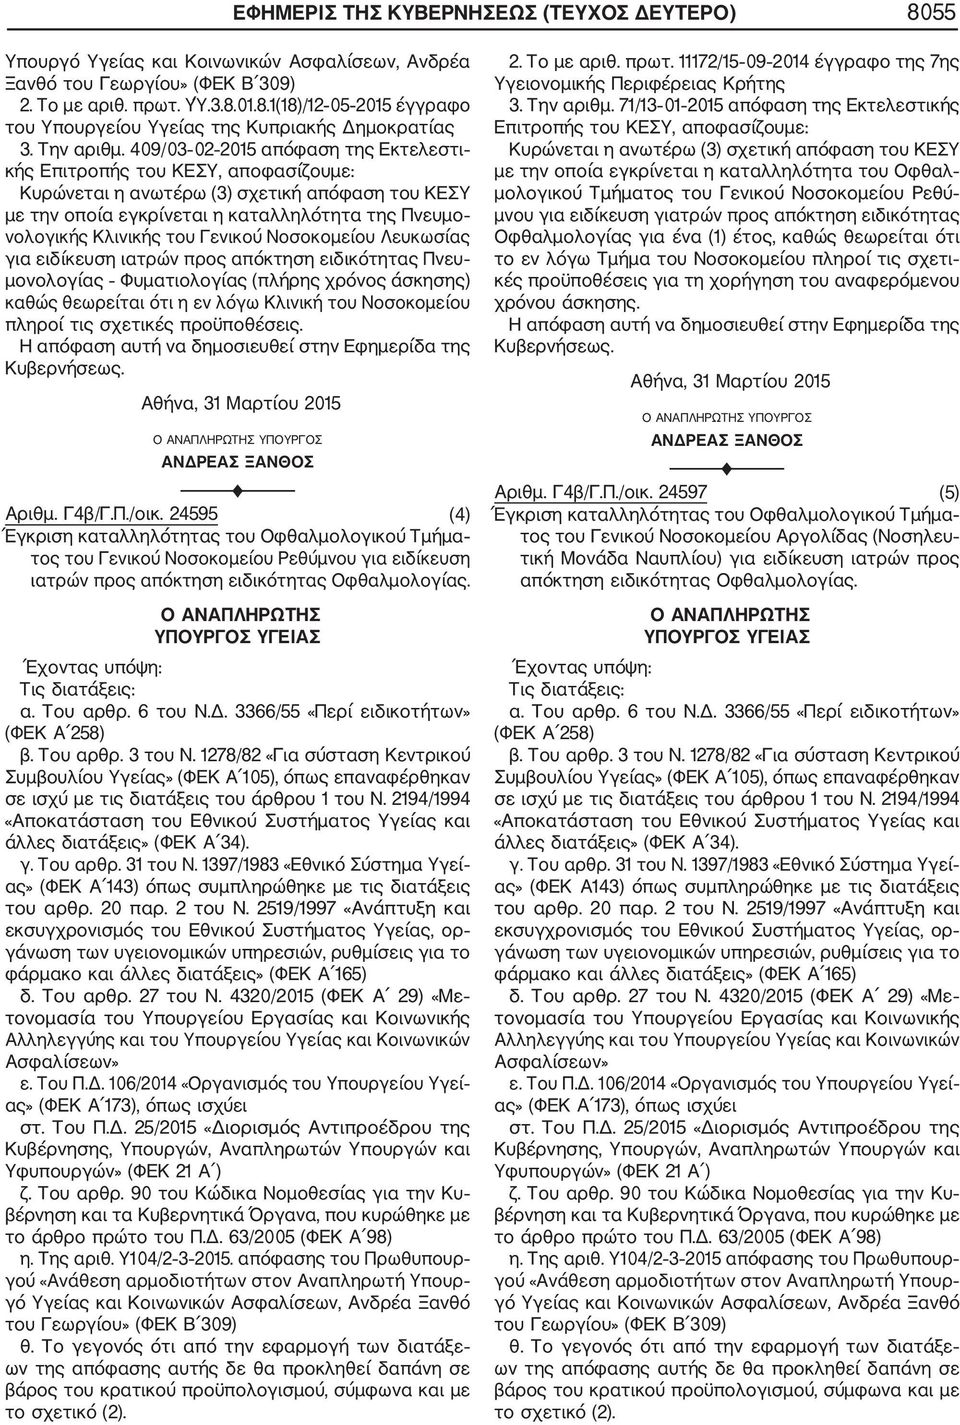 409/03 02 2015 απόφαση της Εκτελεστι με την οποία εγκρίνεται η καταλληλότητα της Πνευμο νολογικής Κλινικής του Γενικού Νοσοκομείου Λευκωσίας για ειδίκευση ιατρών προς απόκτηση ειδικότητας Πνευ